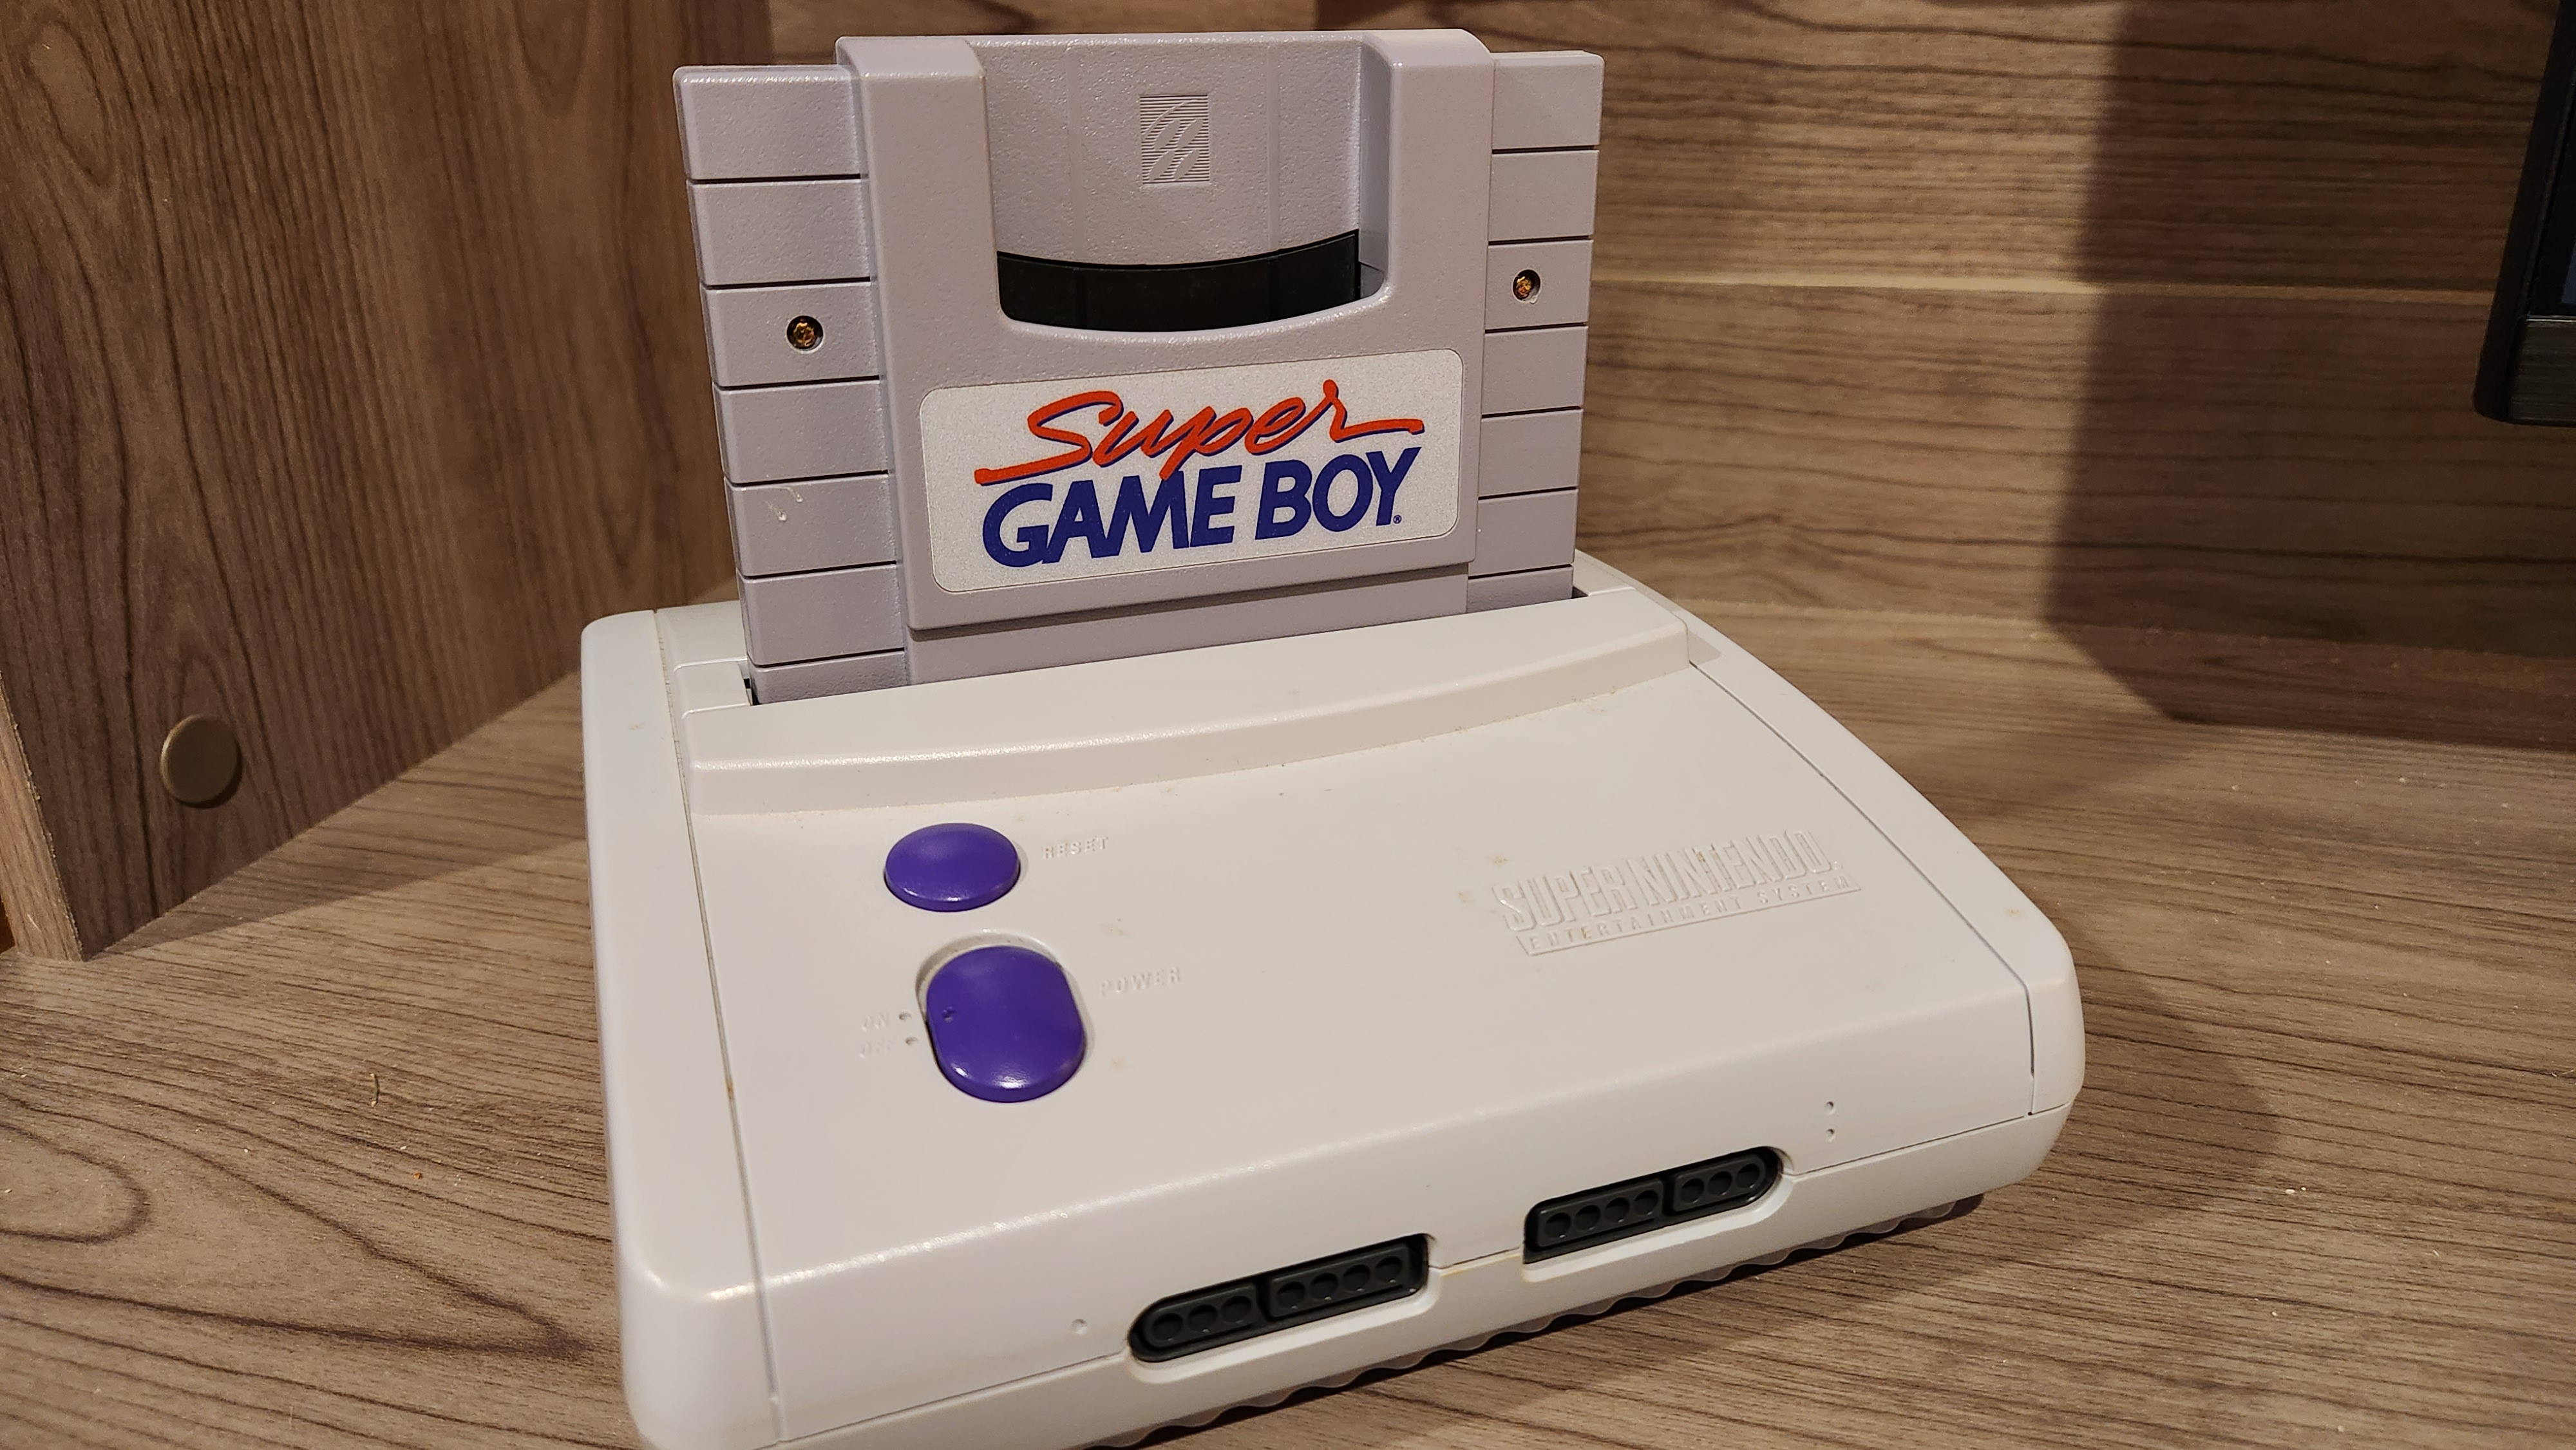 The Super Game Boy in a Super Nintendo